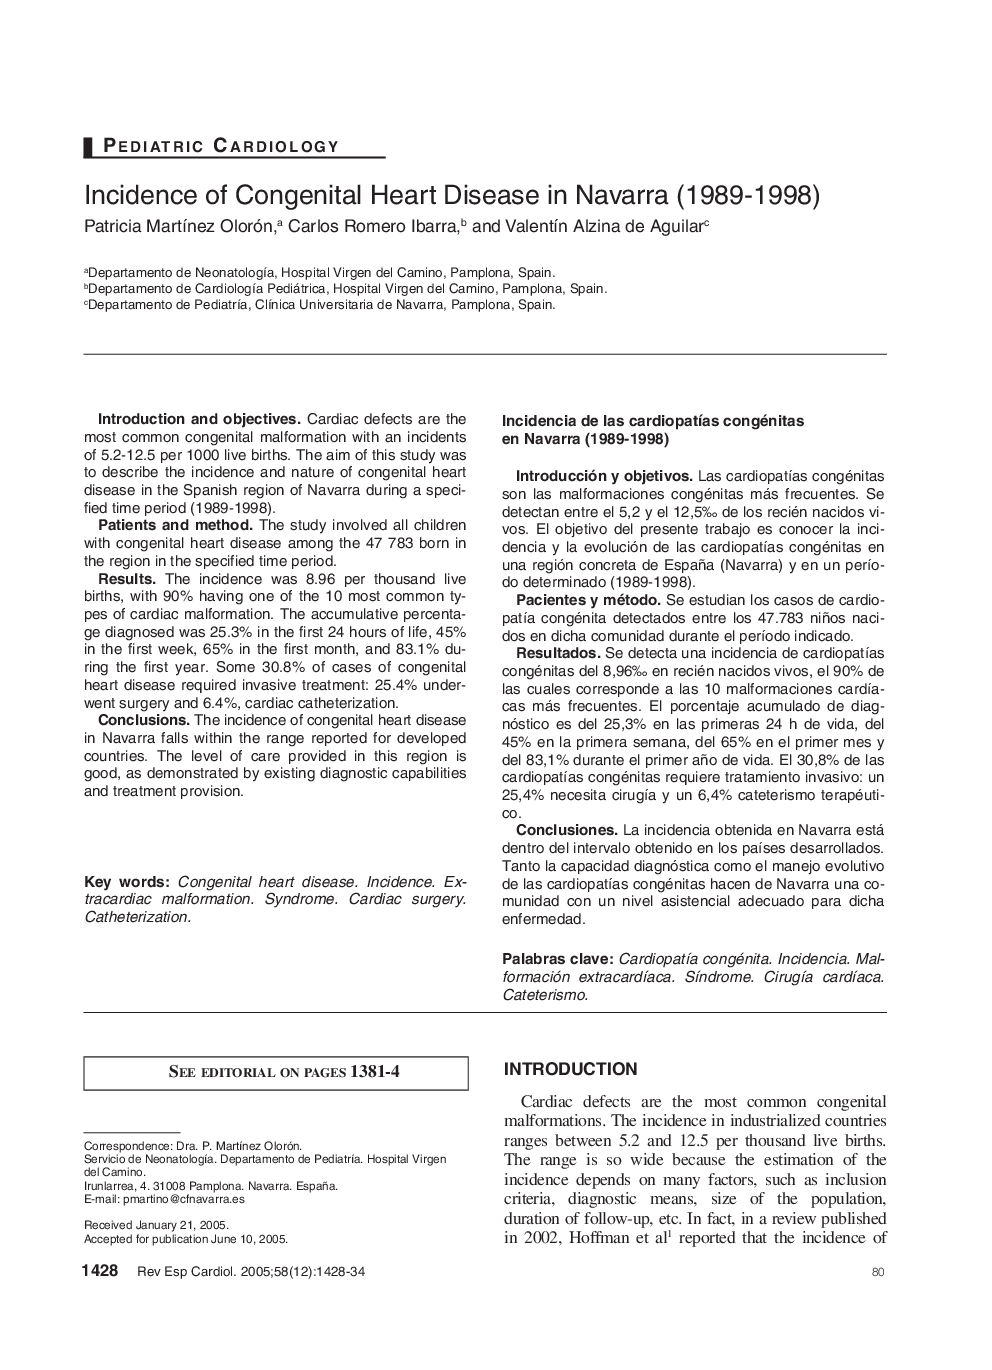 Incidence of Congenital Heart Disease in Navarra (1989-1998)